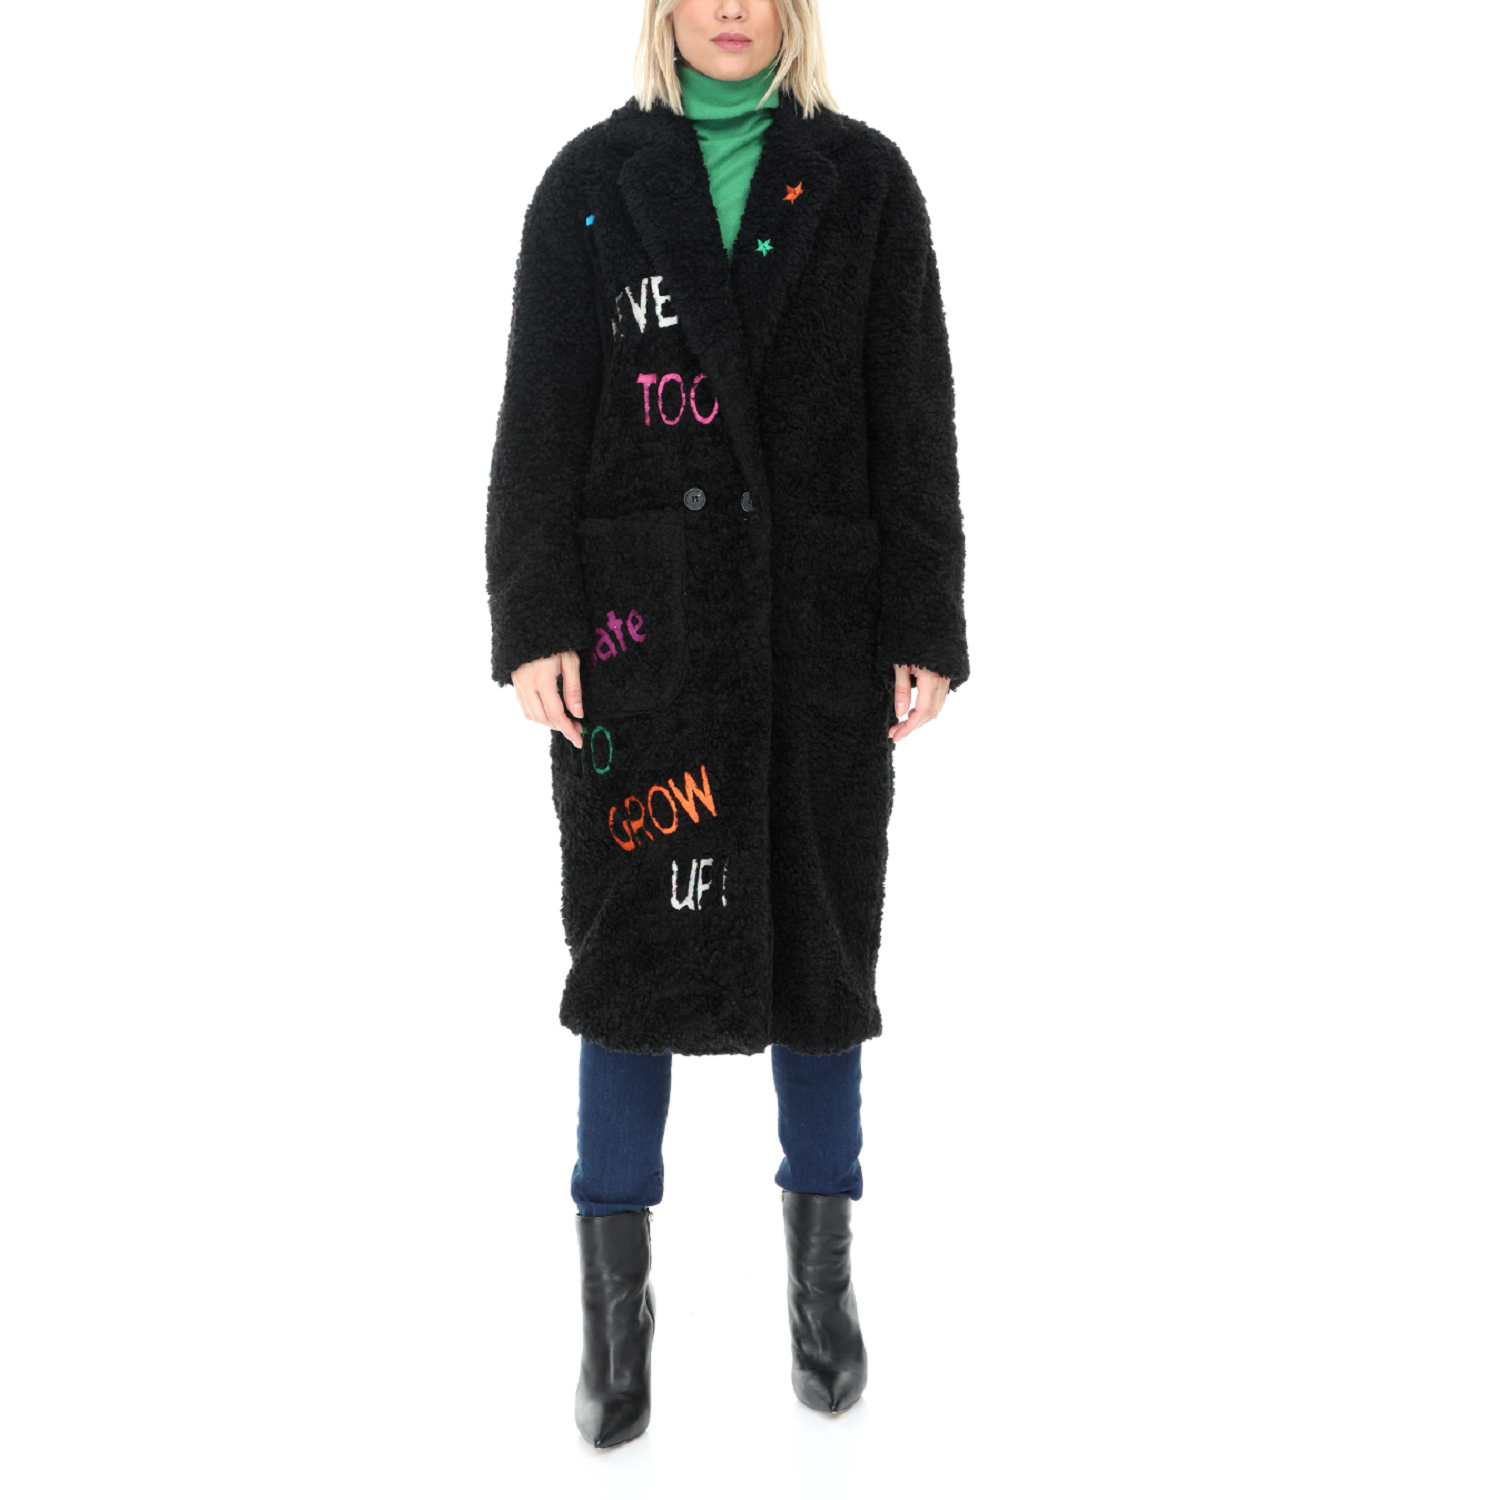 Γυναικεία/Ρούχα/Πανωφόρια/Παλτό FRONTSTREET - Γυναικείο γούνινο παλτό FRONTSTREET μαύρο